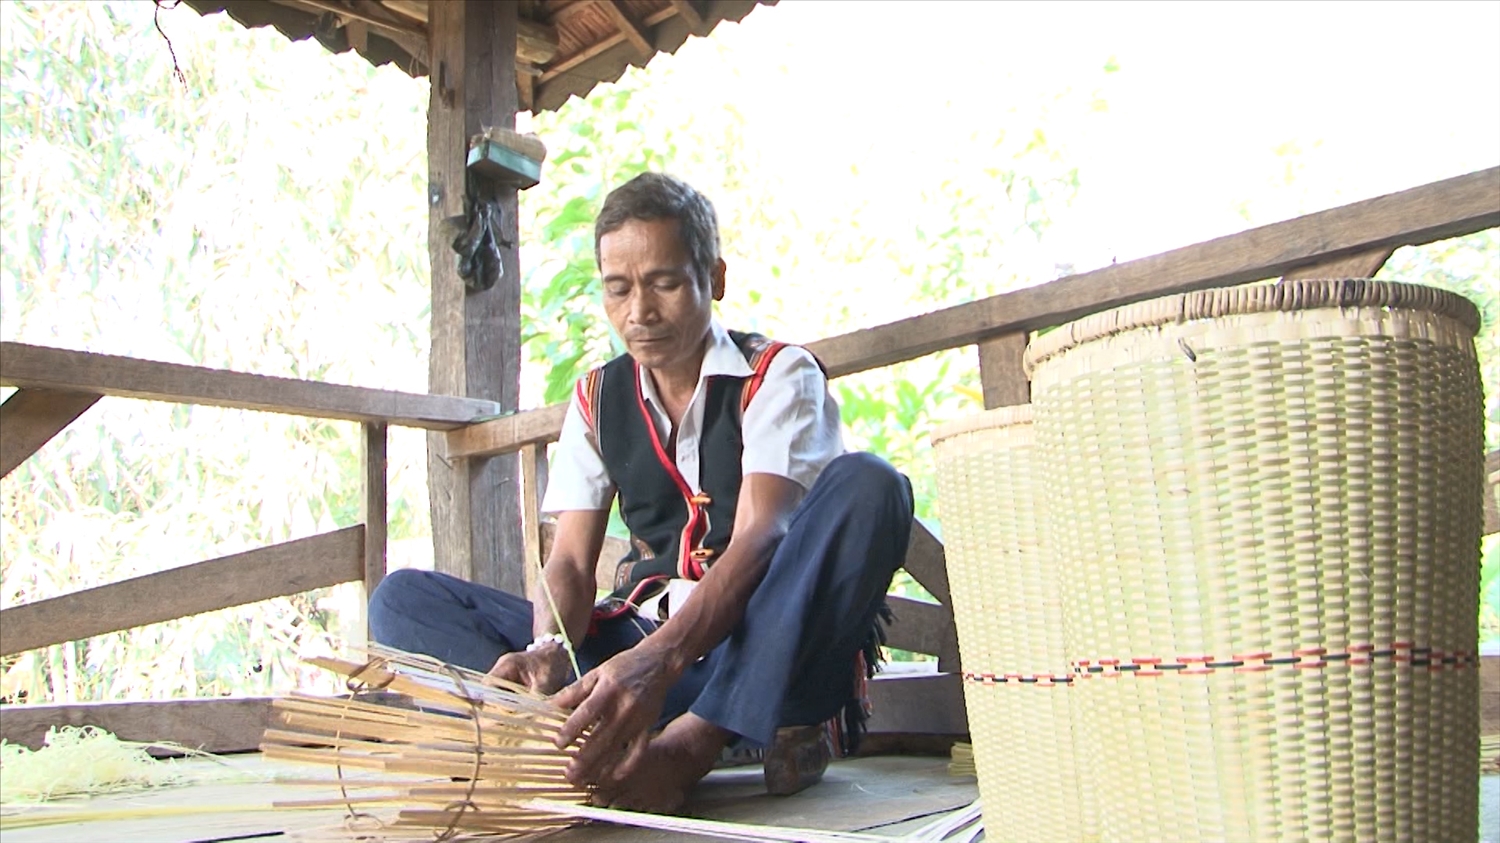 Nghề đan lát giúp nghệ nhân A Hùng có thêm nguồn thu nhập cho gia đình